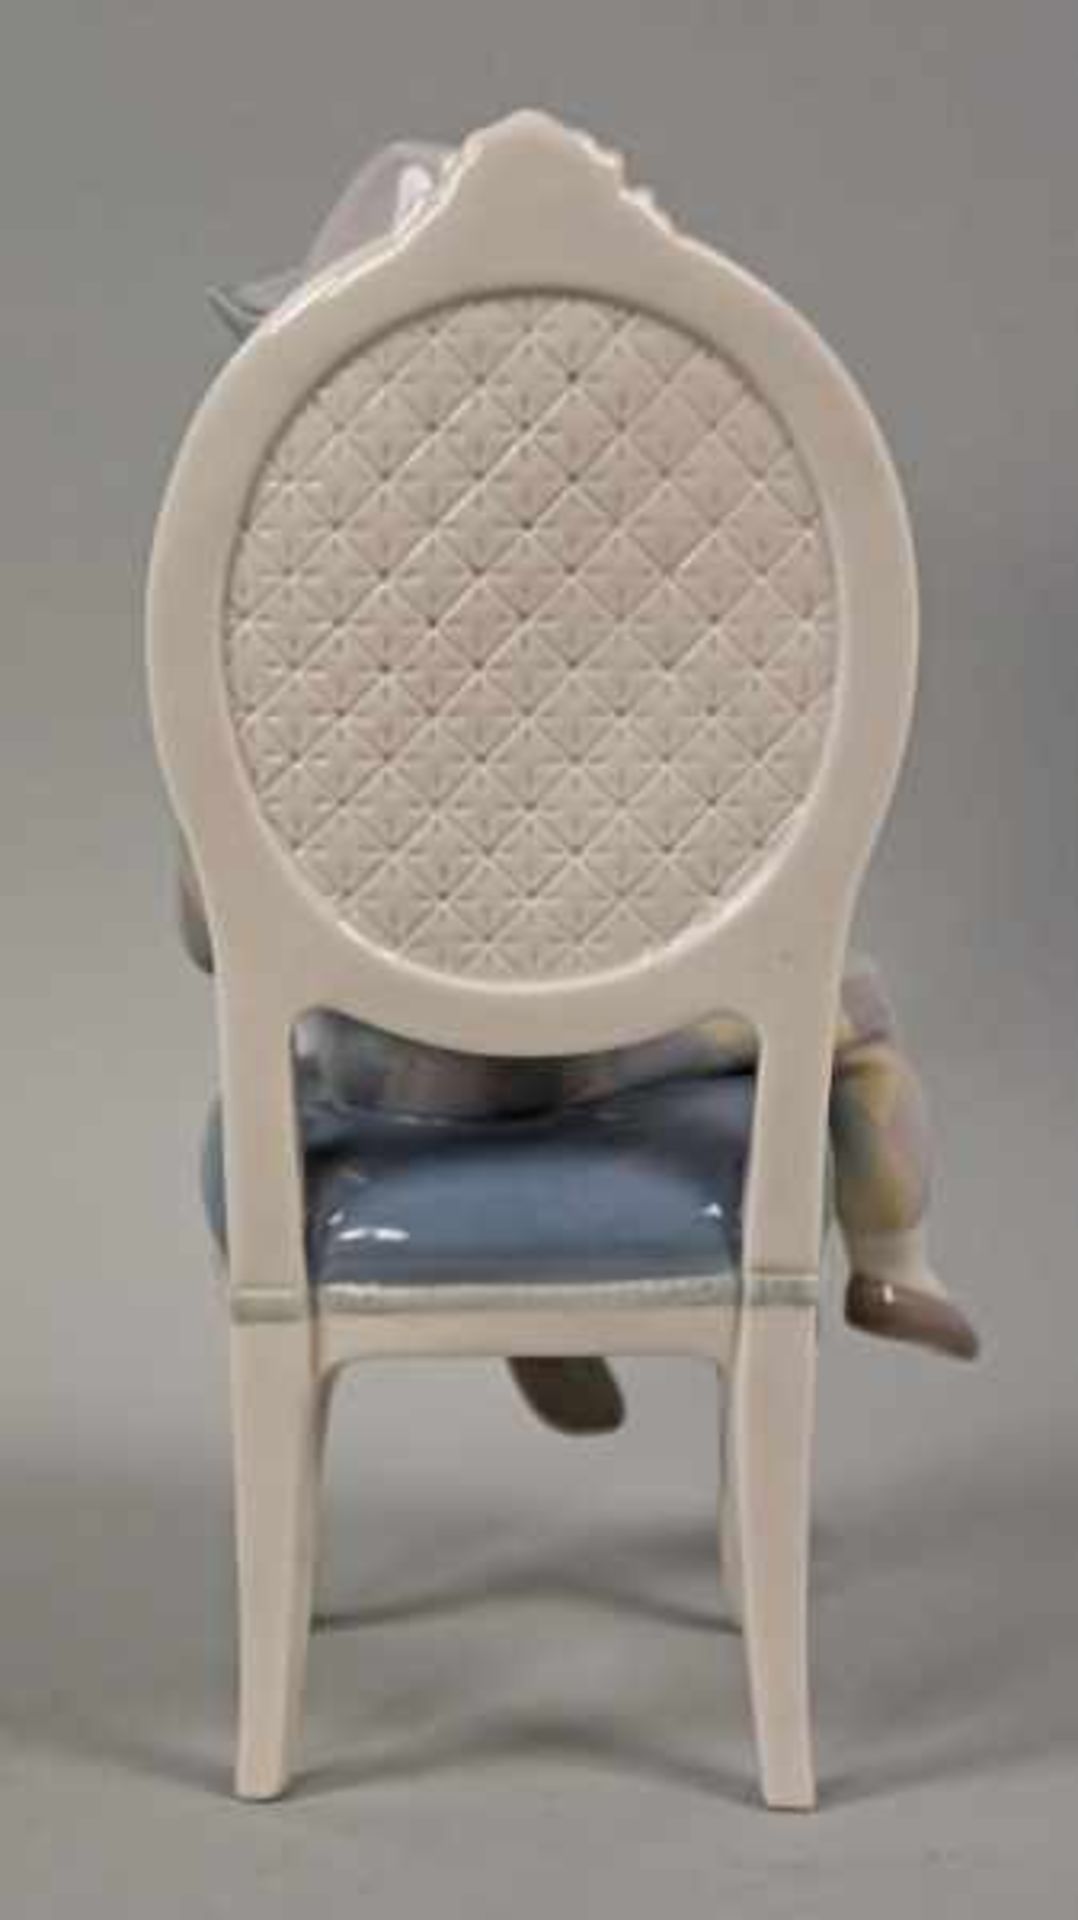 HARLEKIN mit breitem weißen Kragen, auf Stuhl sitzend, auf dem Schoß eine weiße Katze mit - Bild 4 aus 9